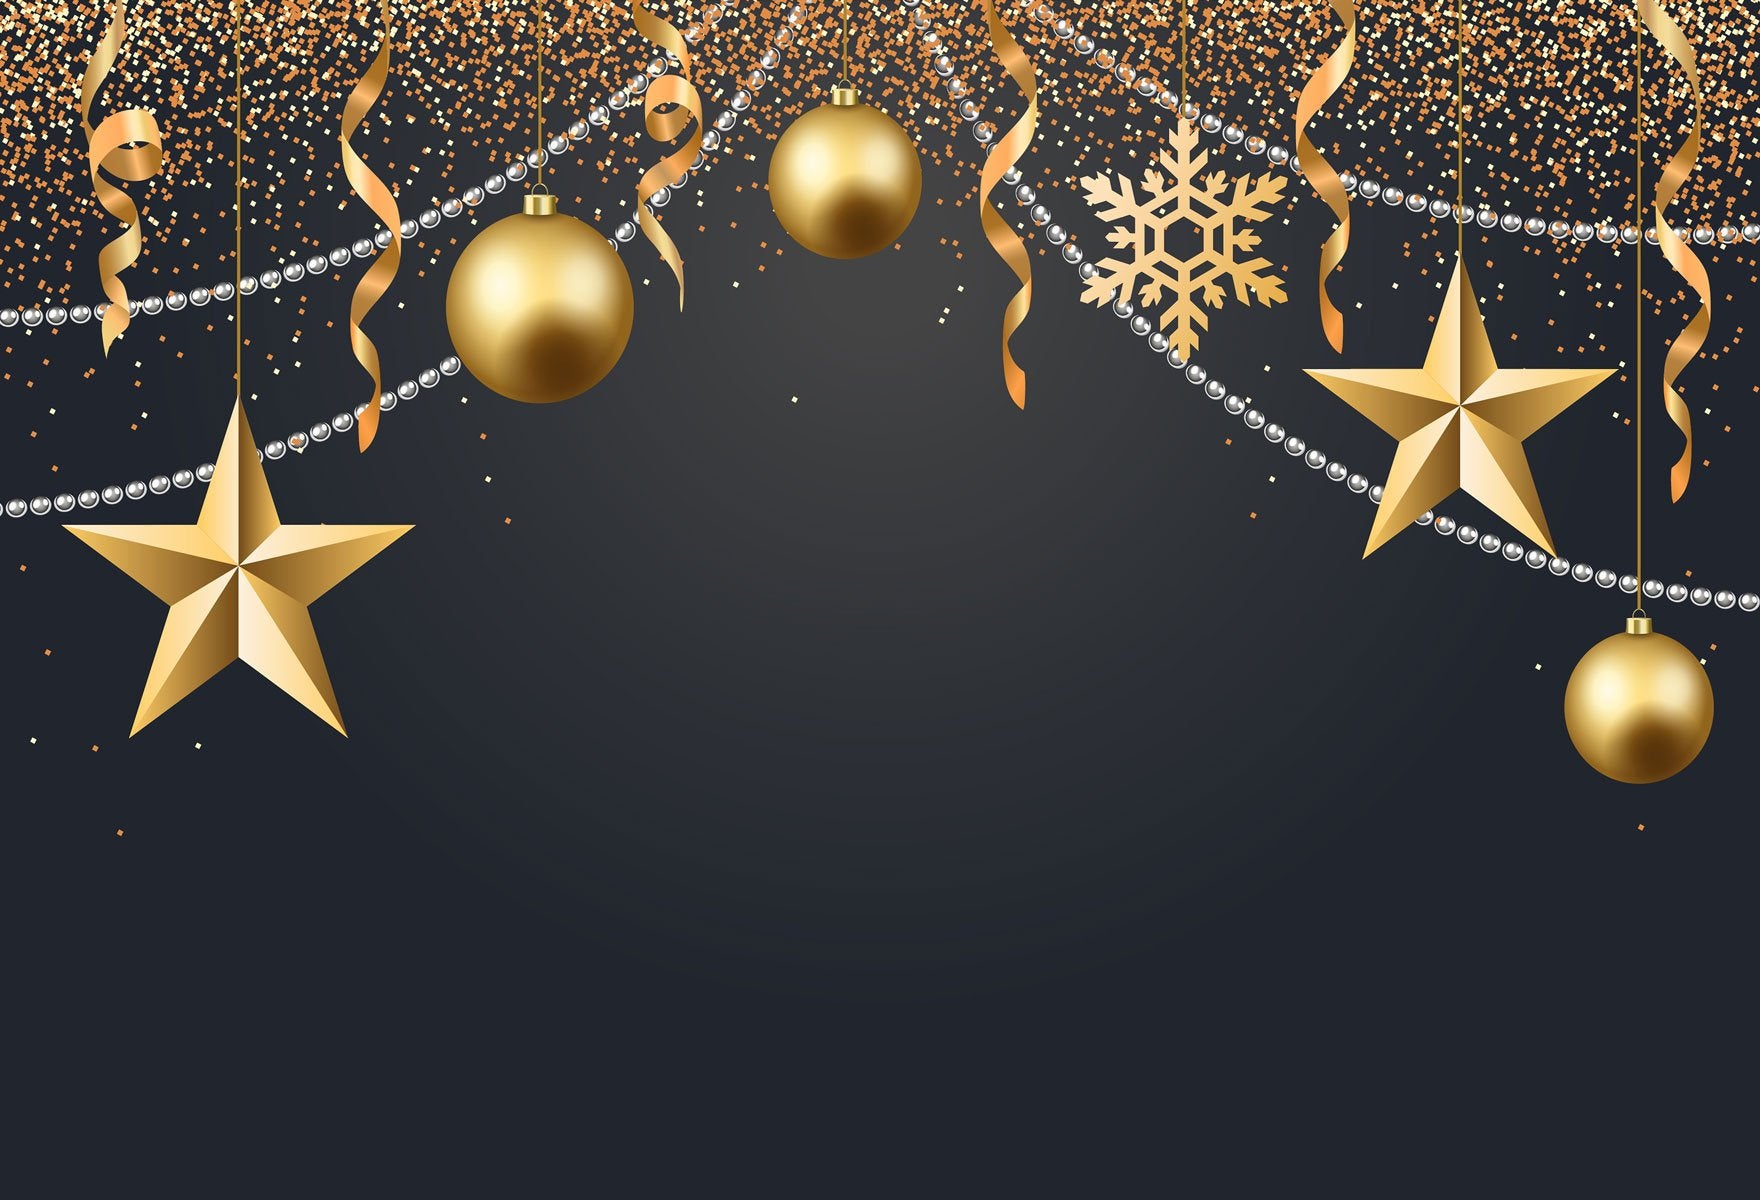 Kate-guten Rutsch ins Neue Jahr-dunkler Hintergrund mit goldenen Stern-Dekorations-Hintergrund Für Fotografie